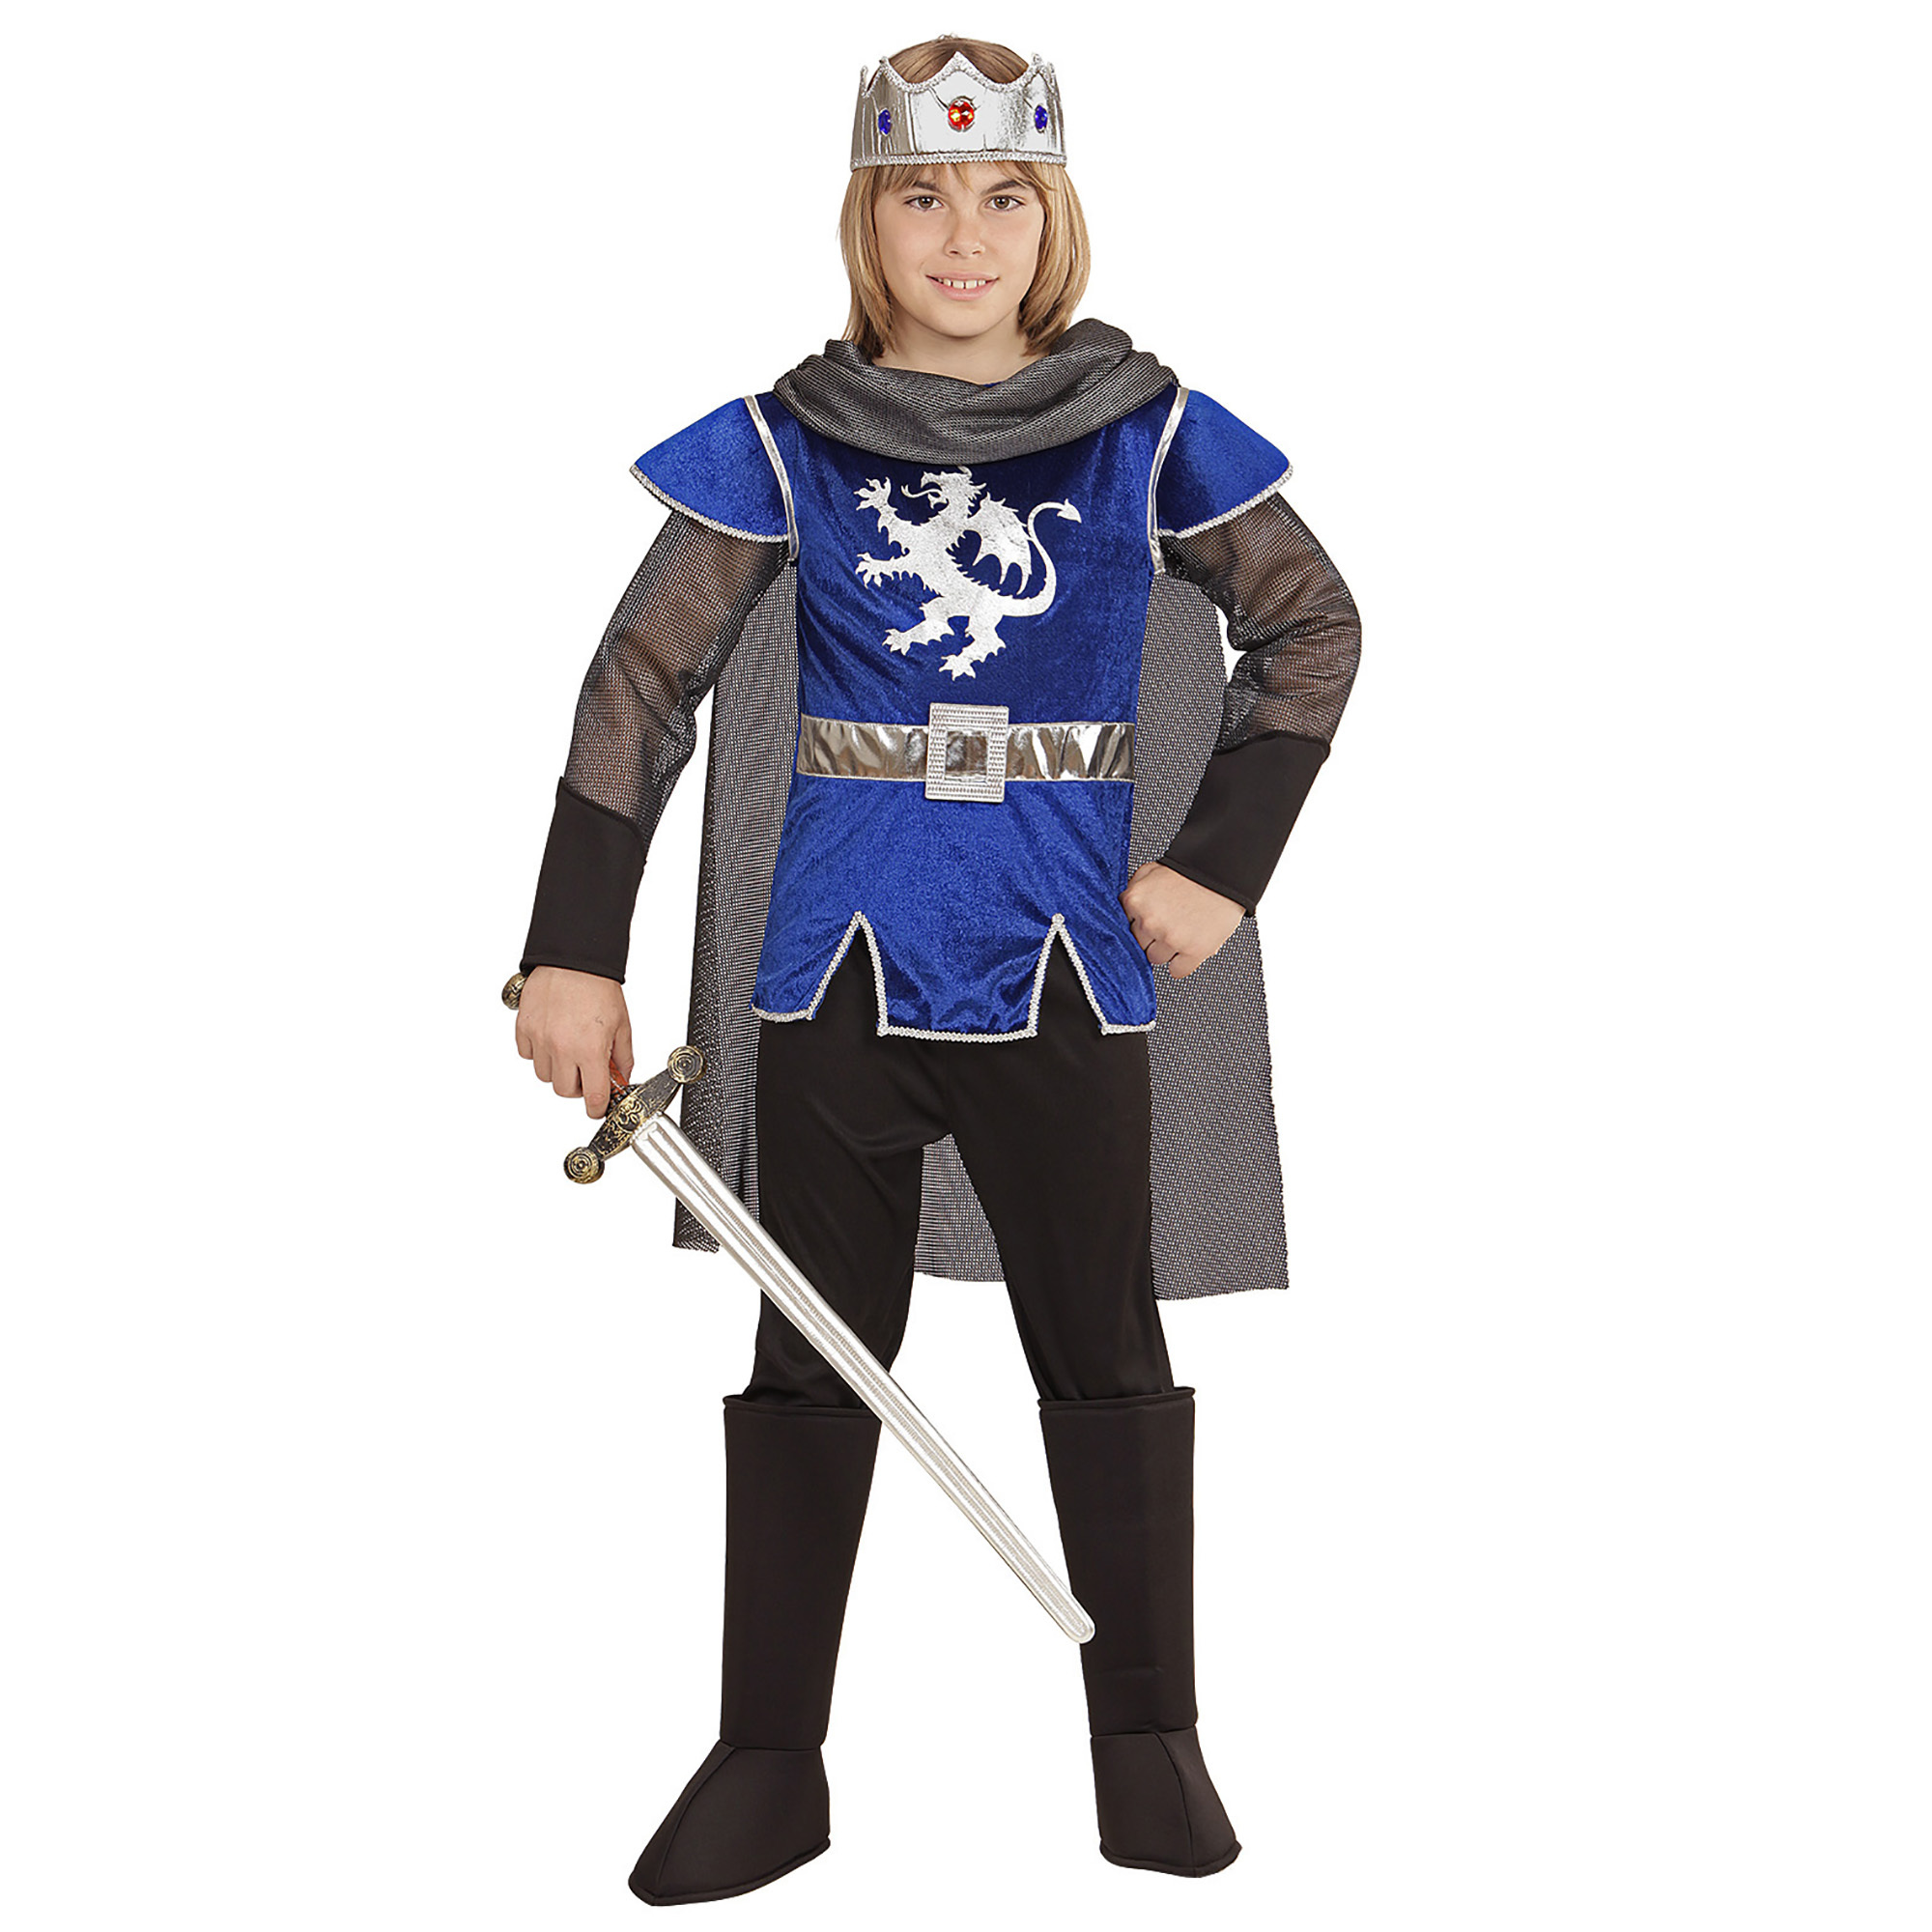 King Arthur blue ridder kostuum kind